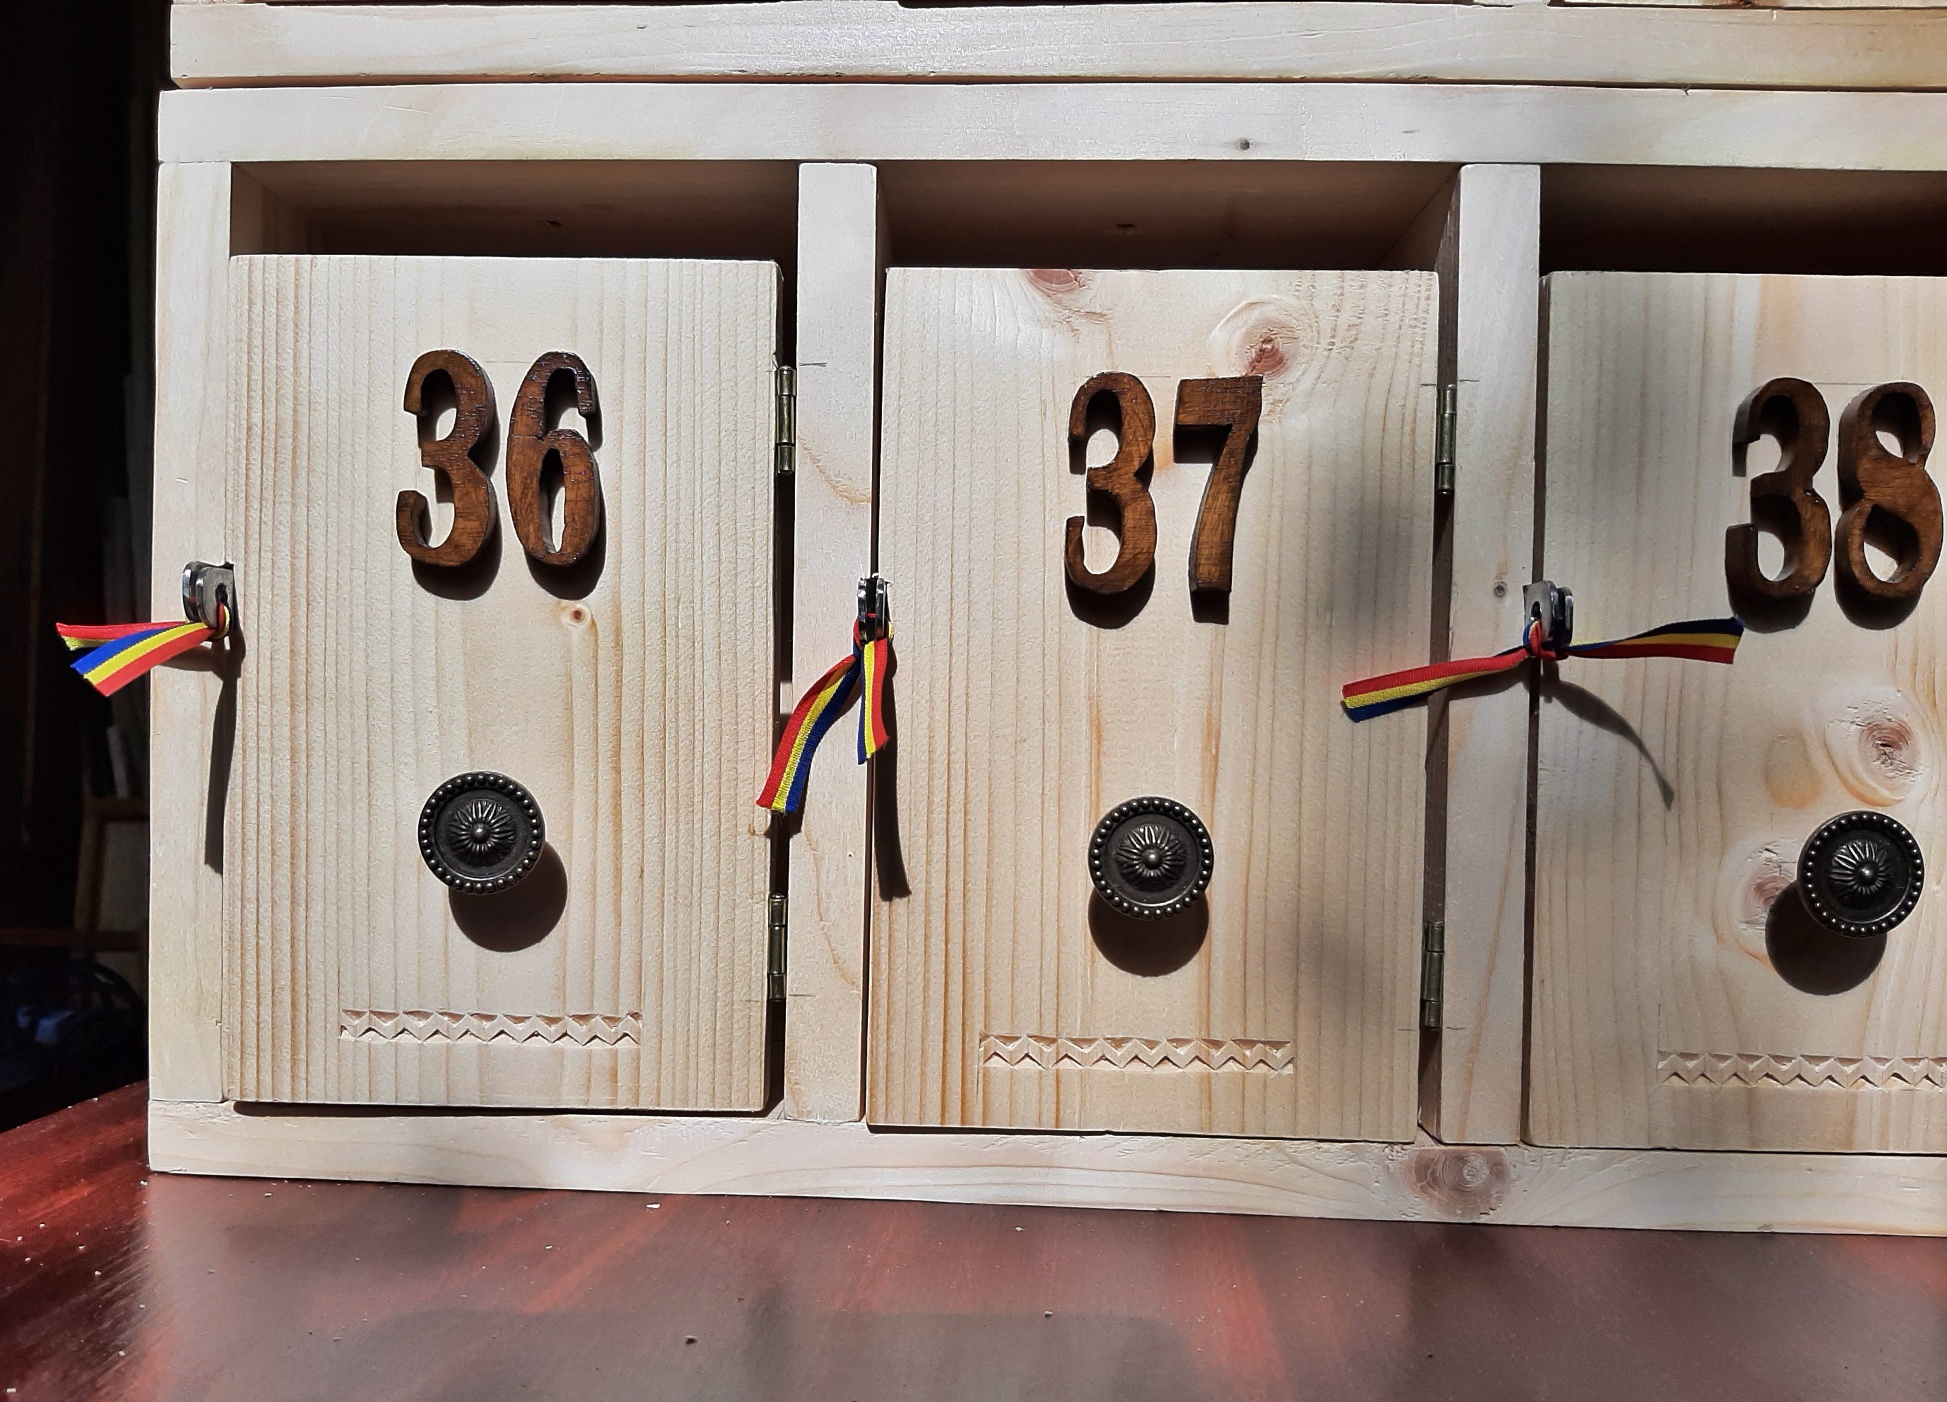 Cutii postale din lemn personalizate pentru scara de bloc